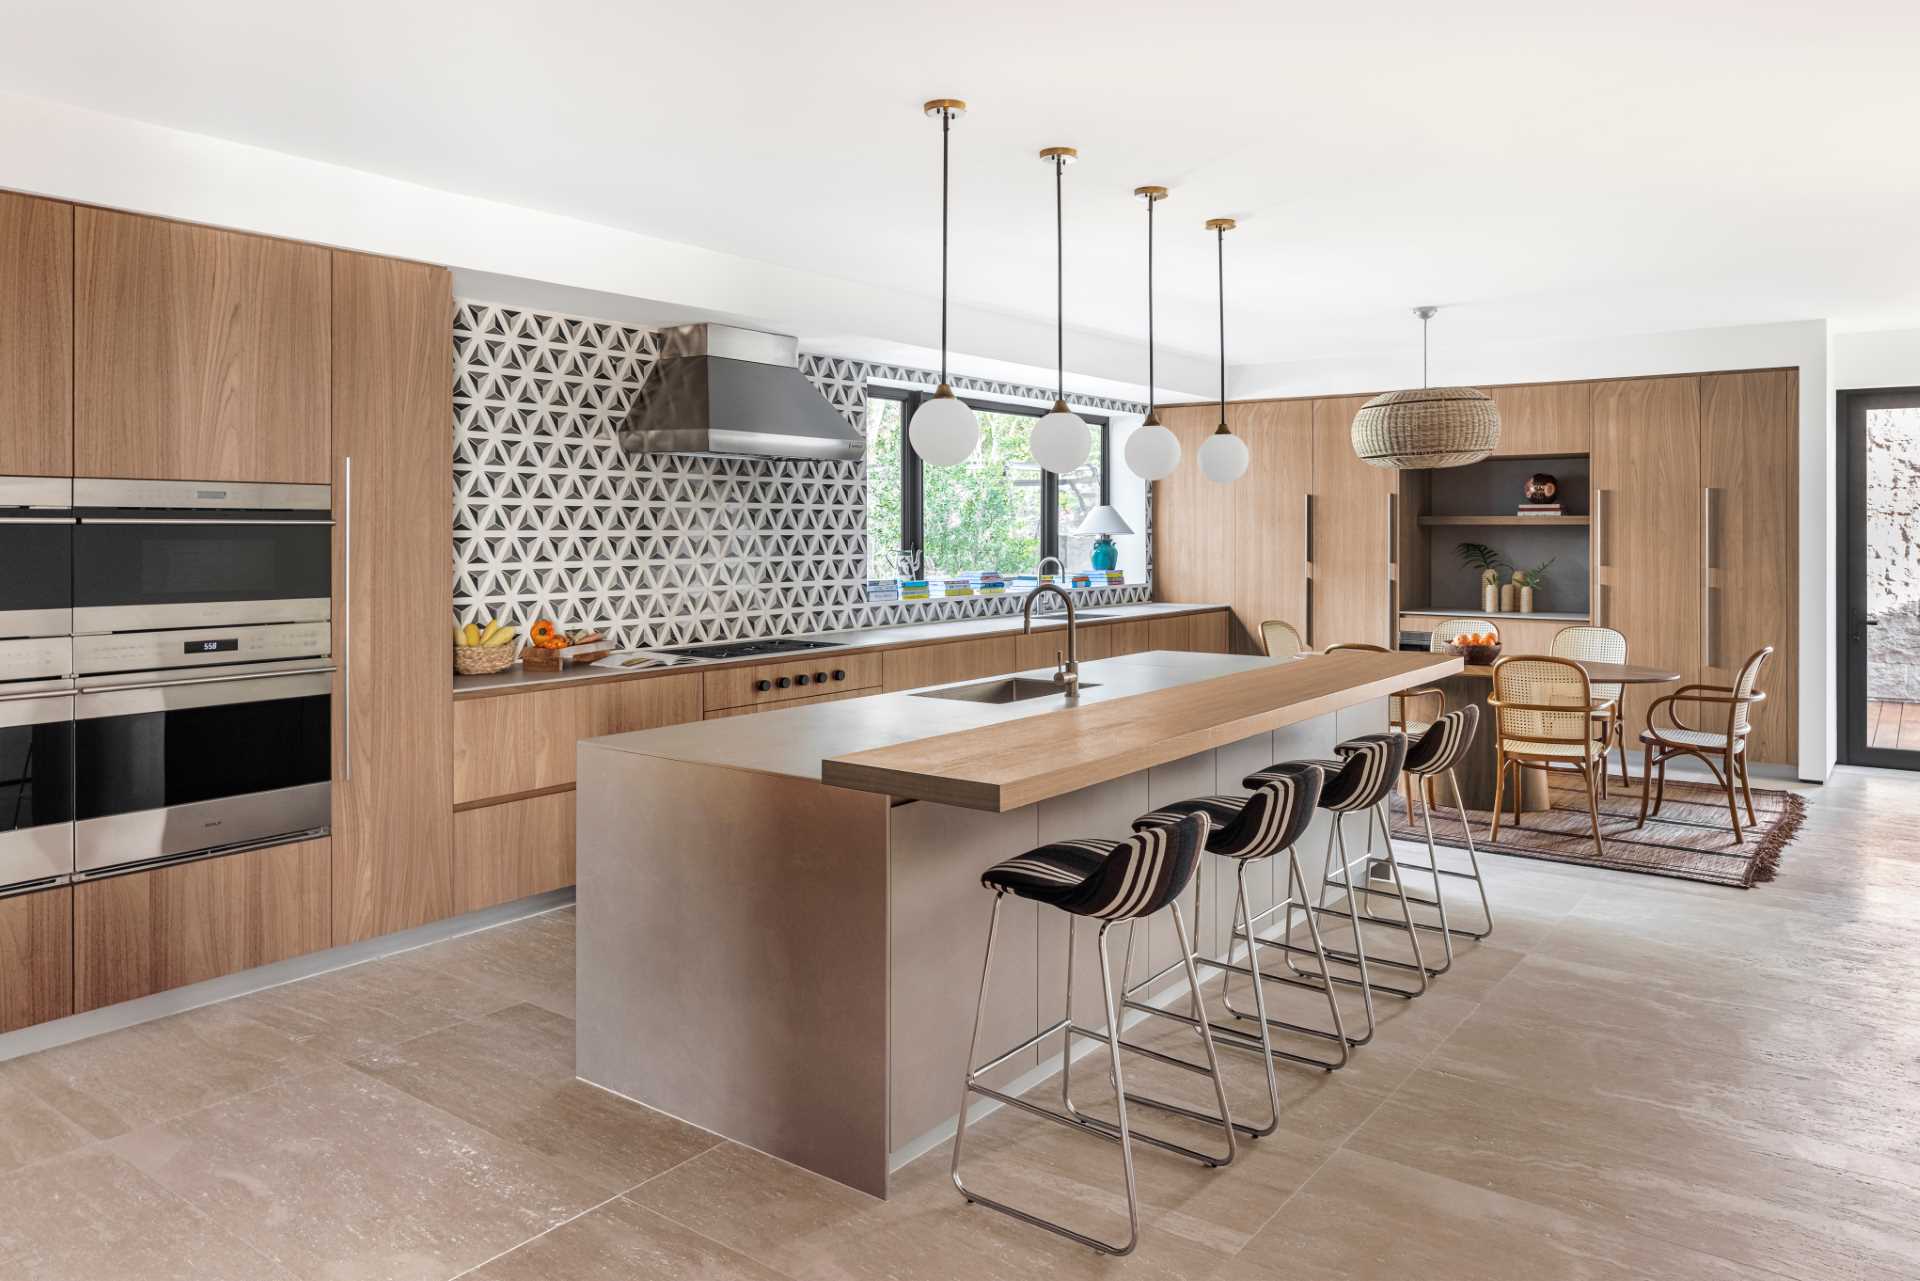 این آشپزخانه مدرن که دارای کابینت های چوبی مدرن و پشتی طرح دار است، همچنین شامل یک جزیره بزرگ با چهارپایه های پیشخوان است.  یک منطقه غذاخوری خودم، نیز وجود دارد.